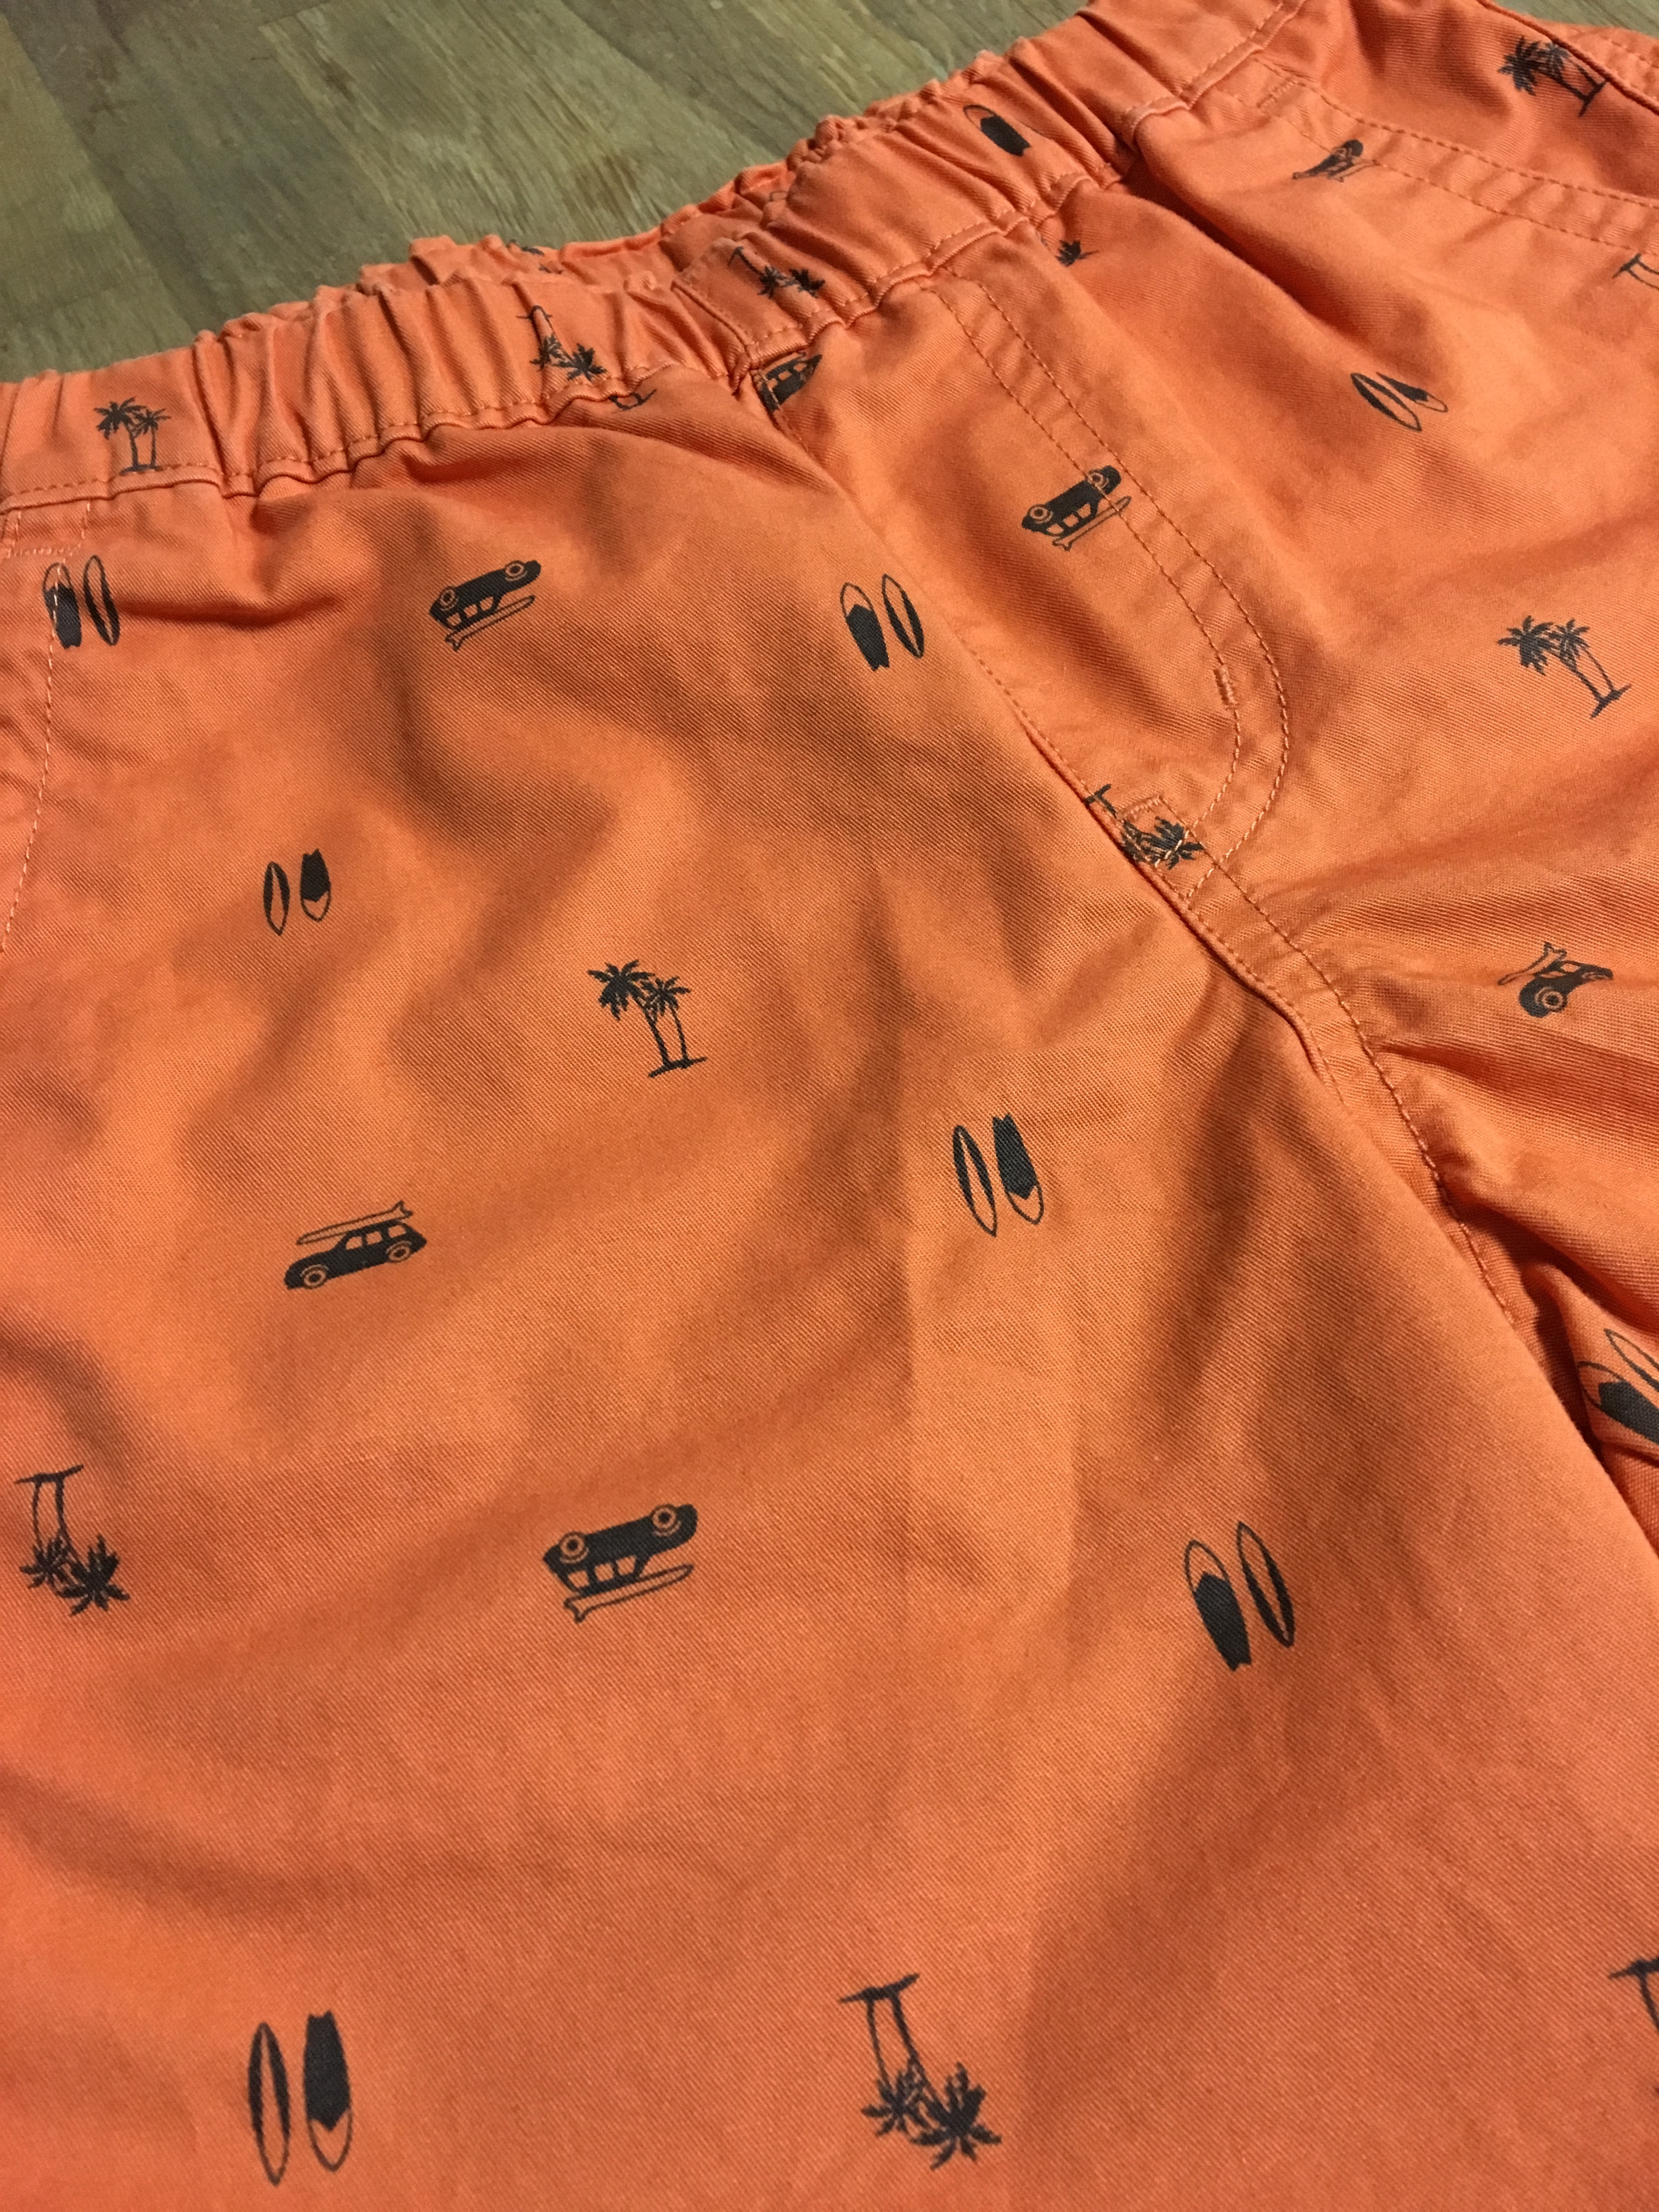 トレンドの西海岸系ファッションに 夏柄ハーフパンツ 子供服 中古服のリサイクル交換 Lynks